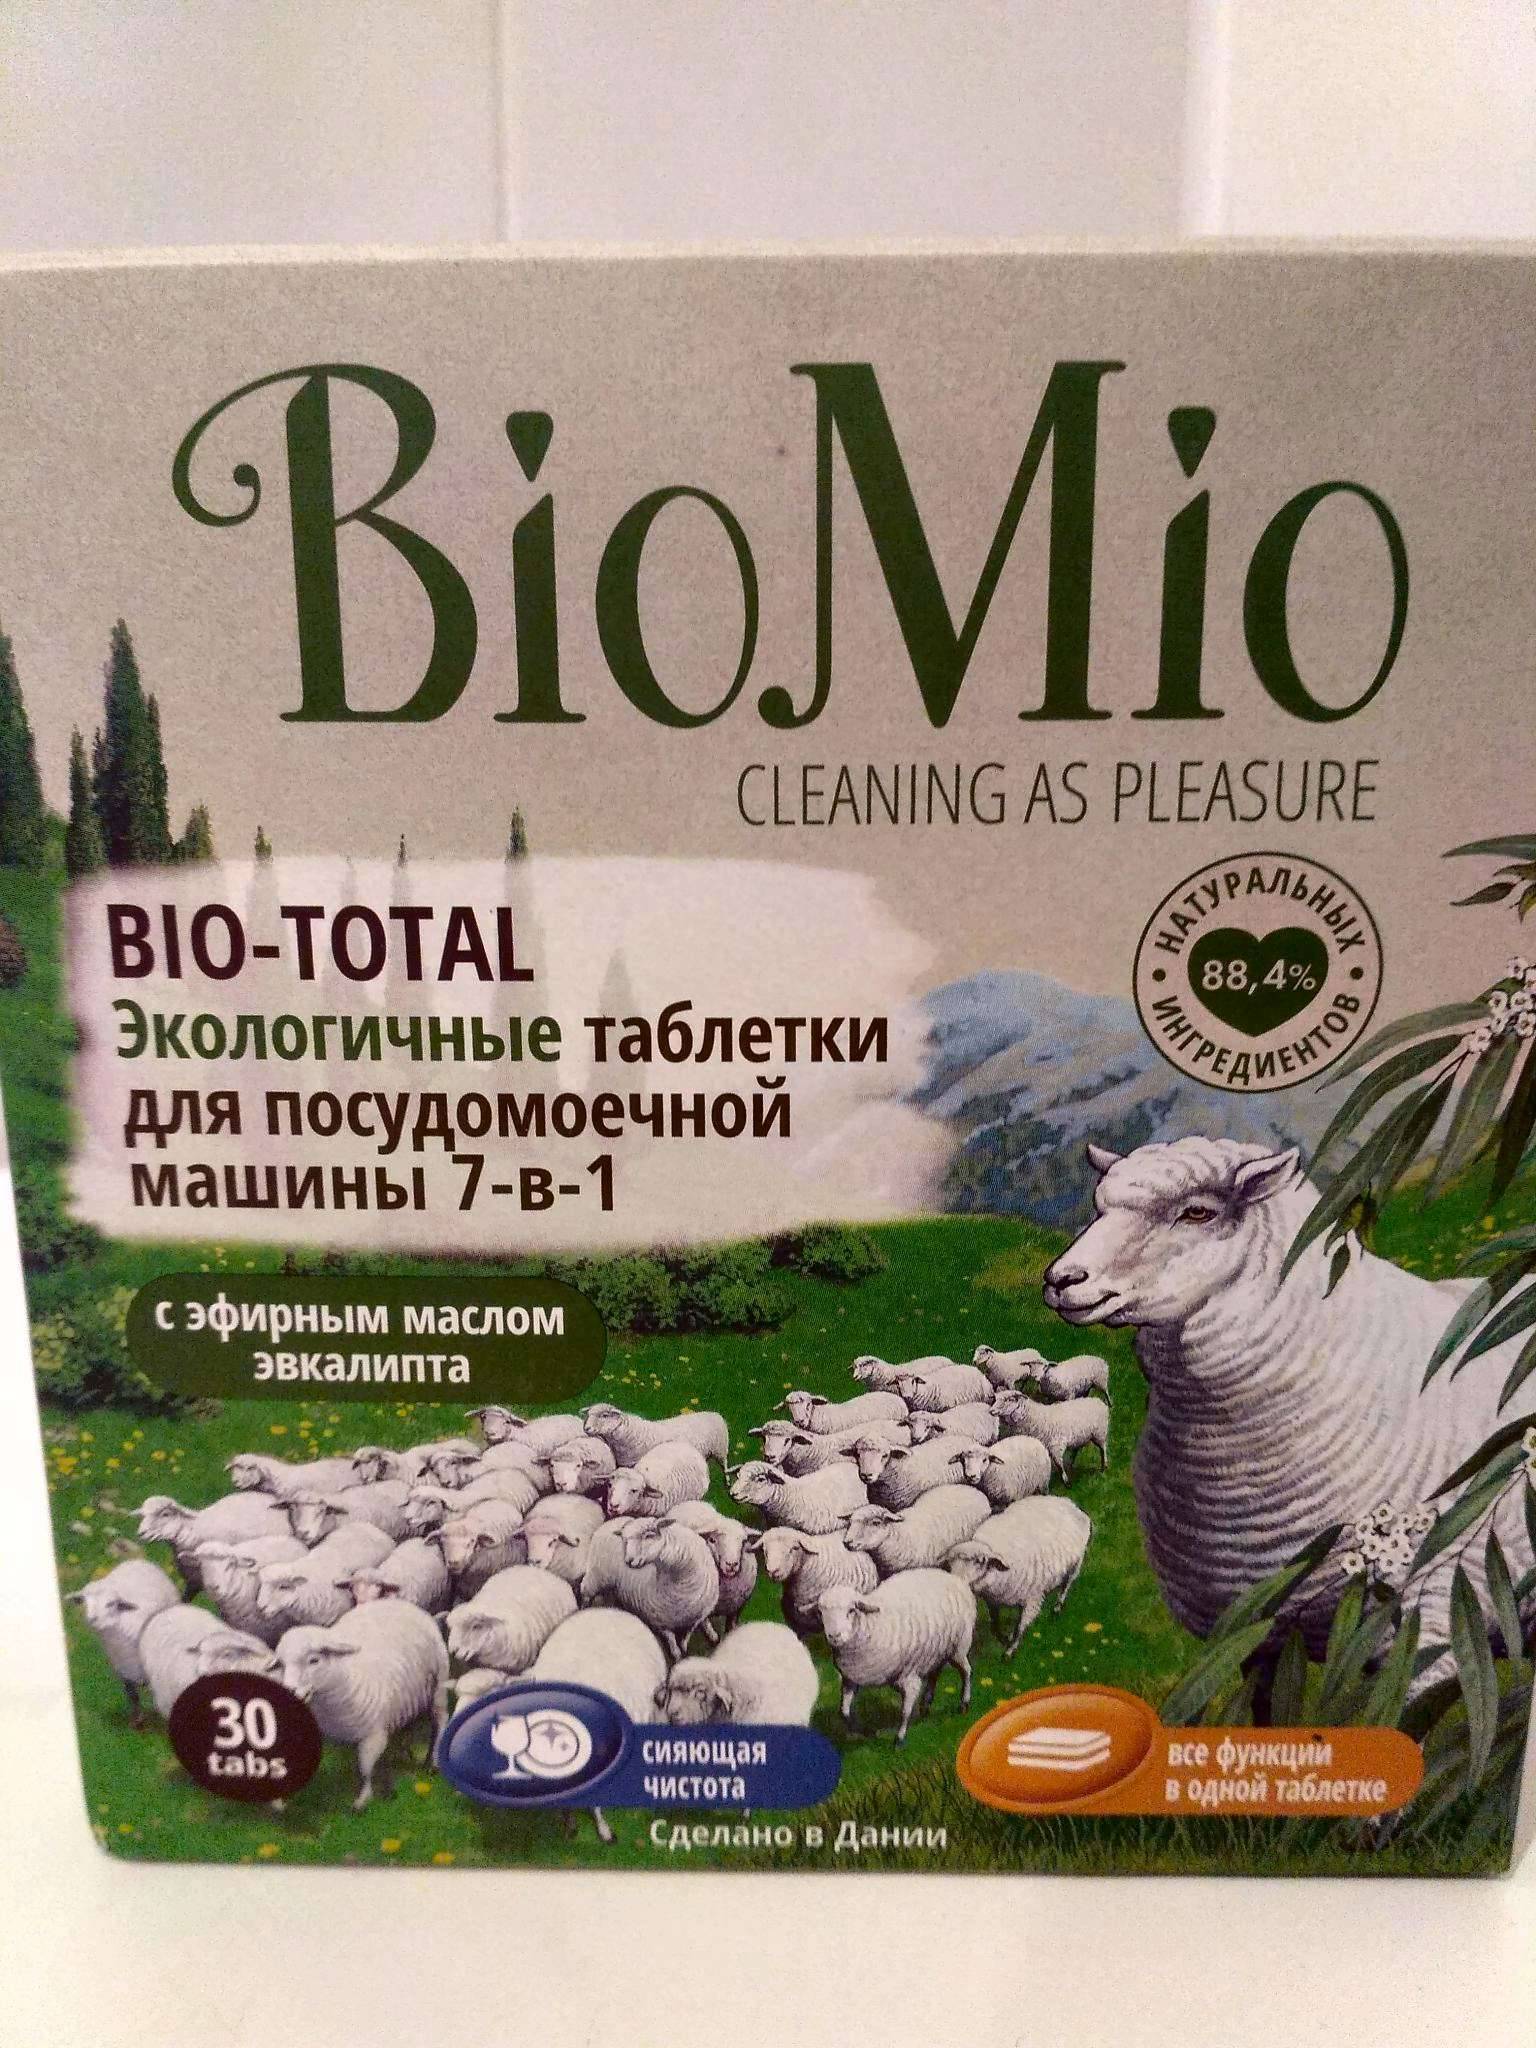 Biomio — тестирование экологичных средств и наши отзывы